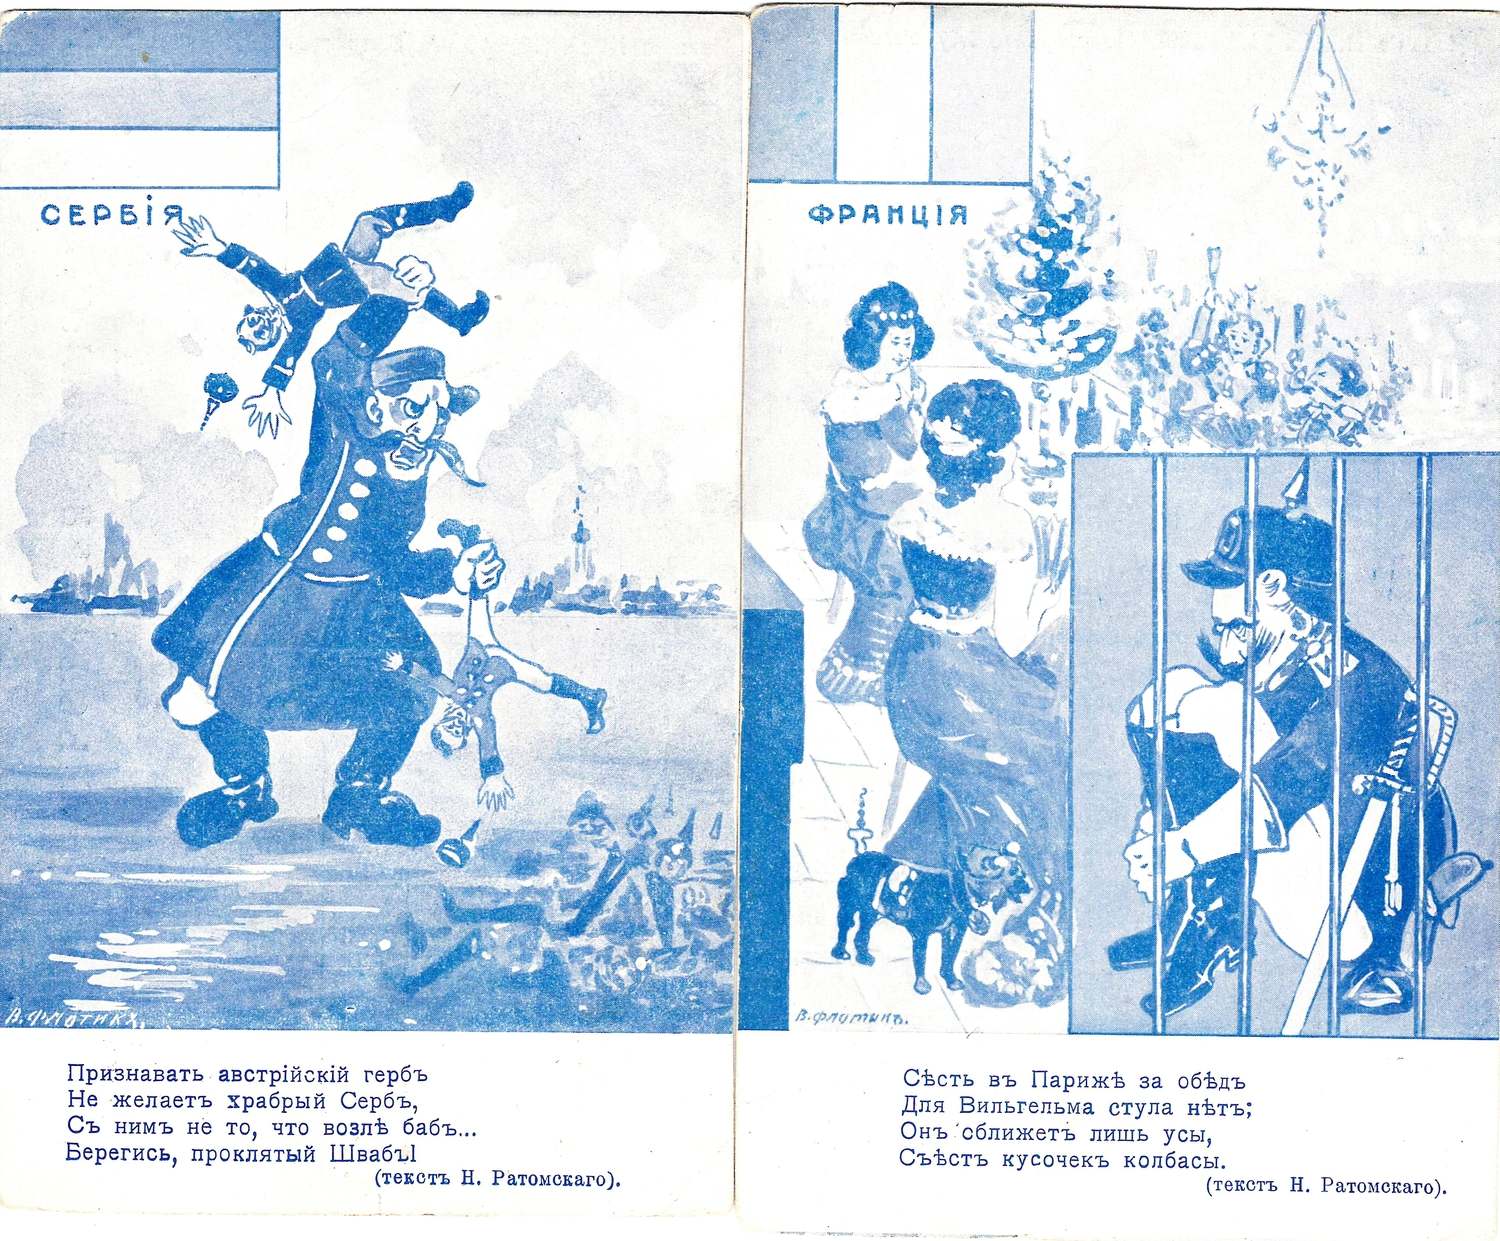 Флотик В. 6 открыток из серии «Страны-союзницы».  Издание Н. Николаева, 1910-е годы.